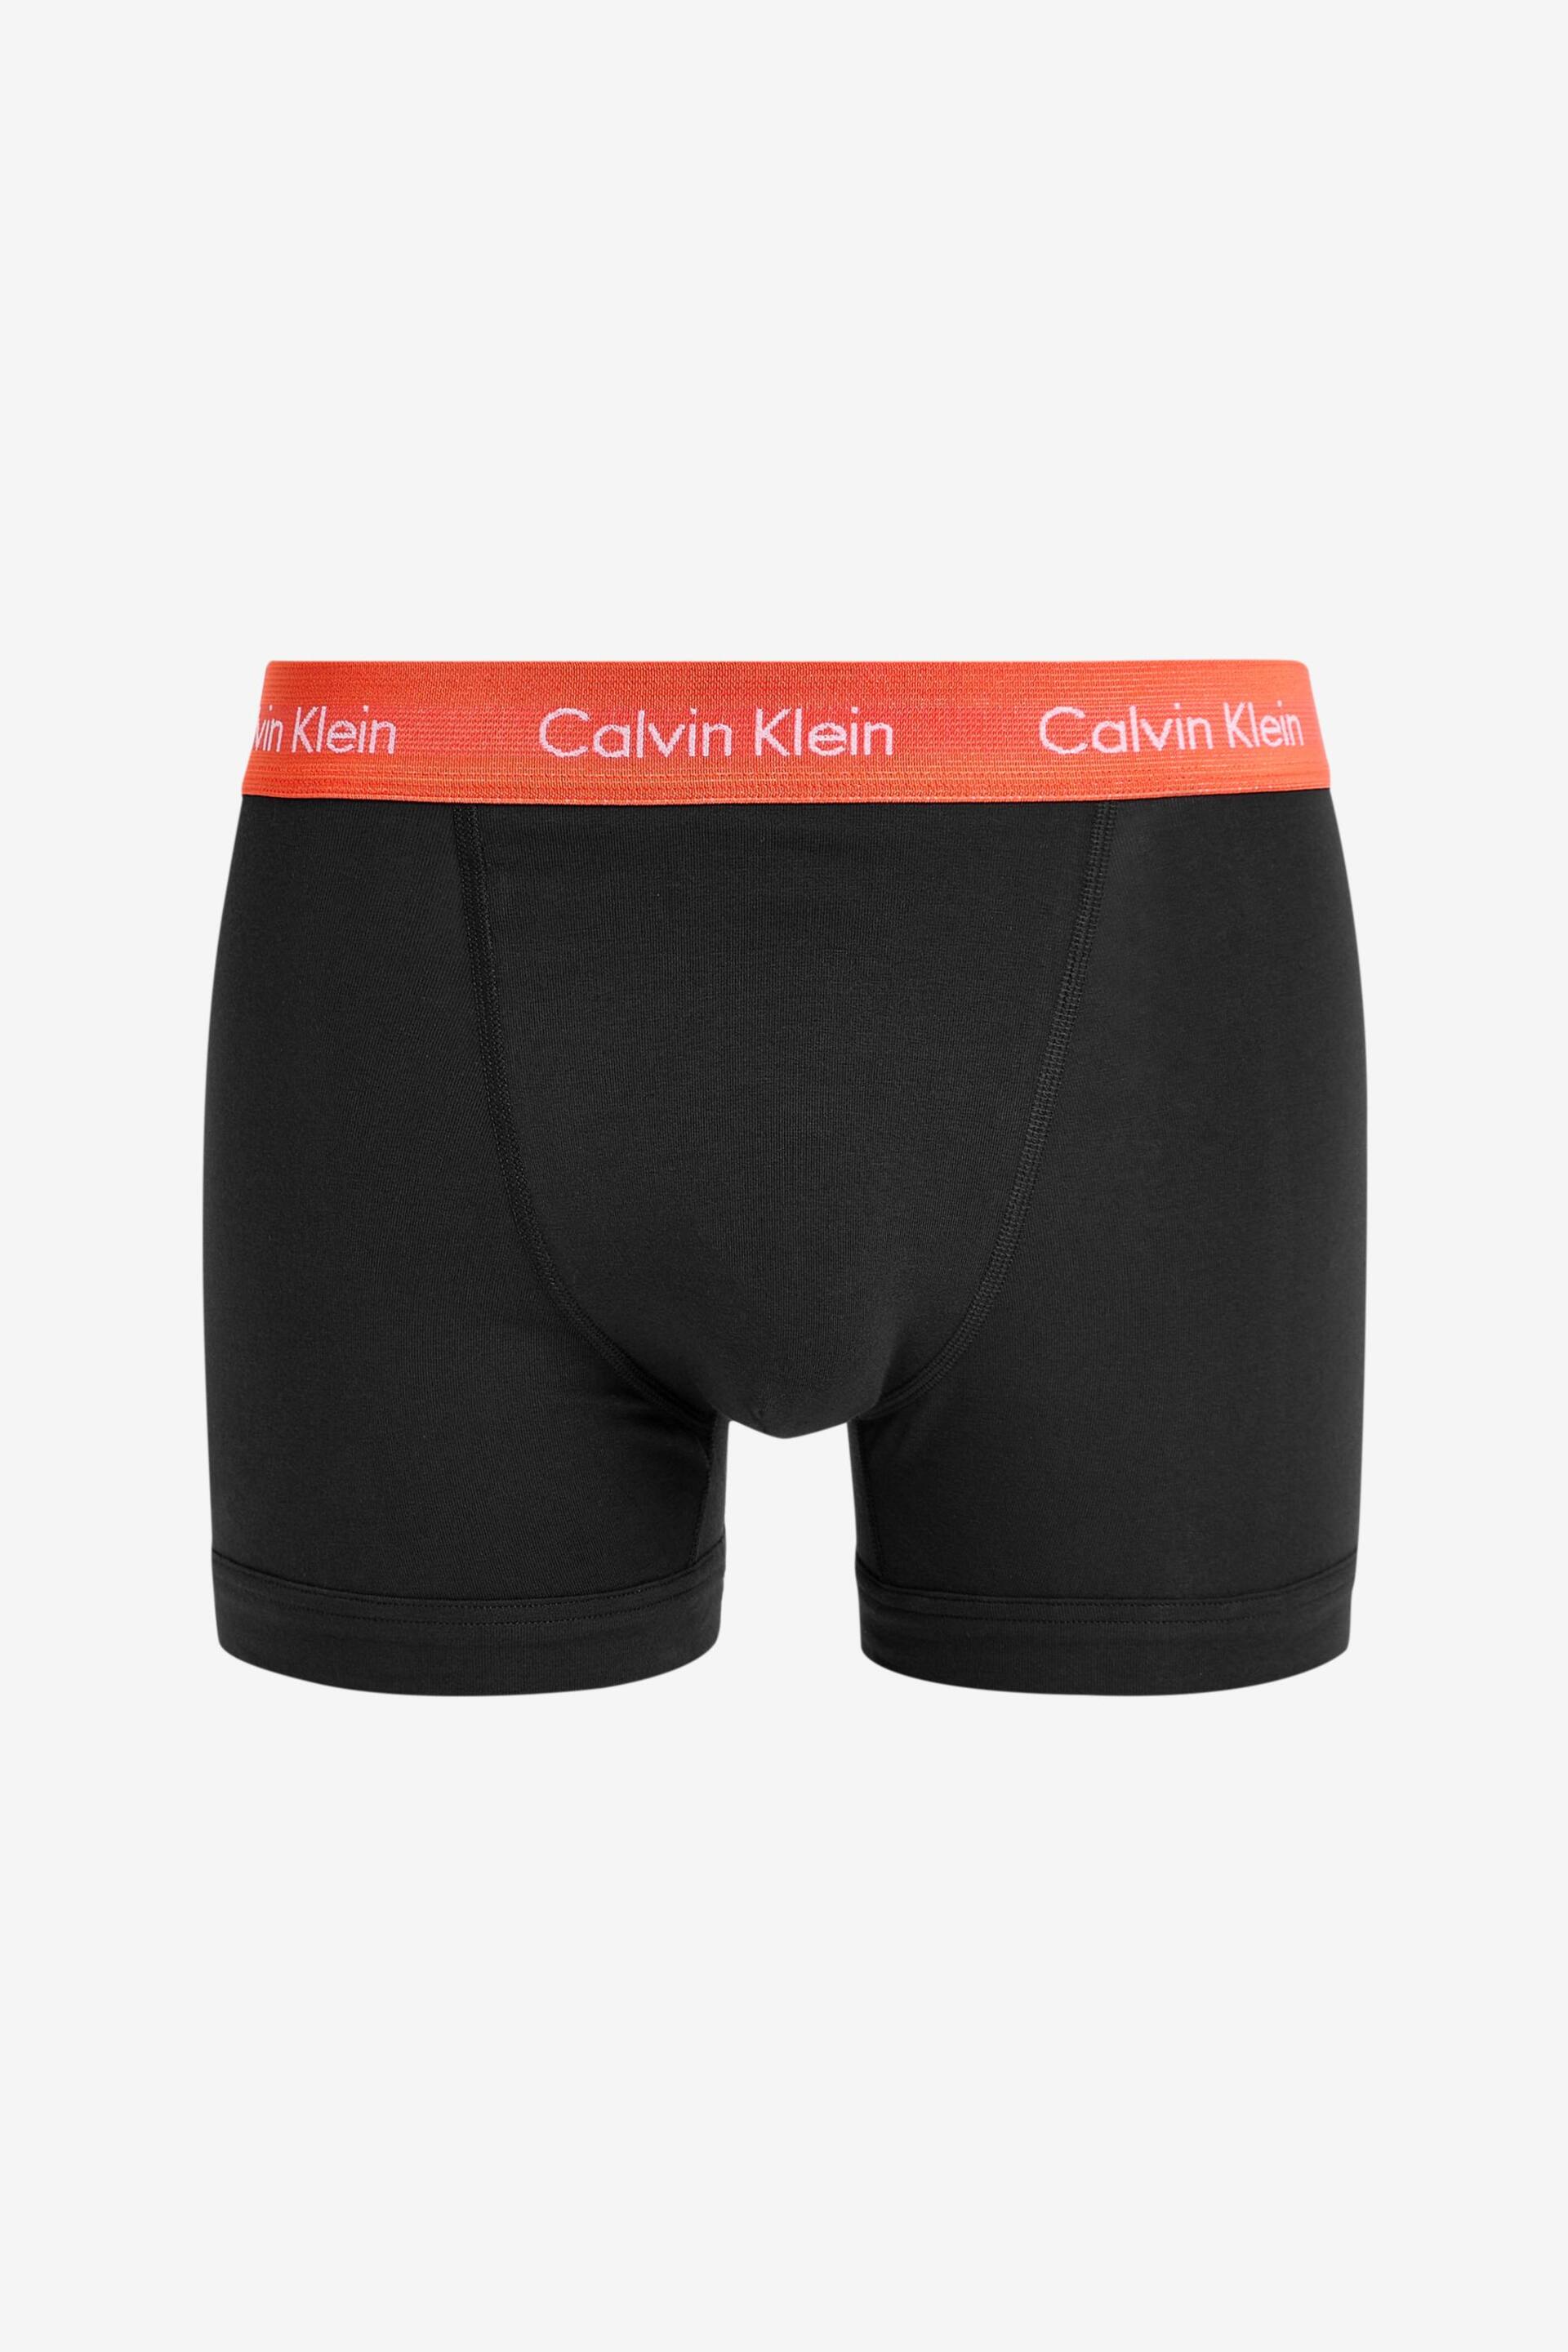 Calvin Klein Dark Black Trunks 5 Pack - Image 6 of 6